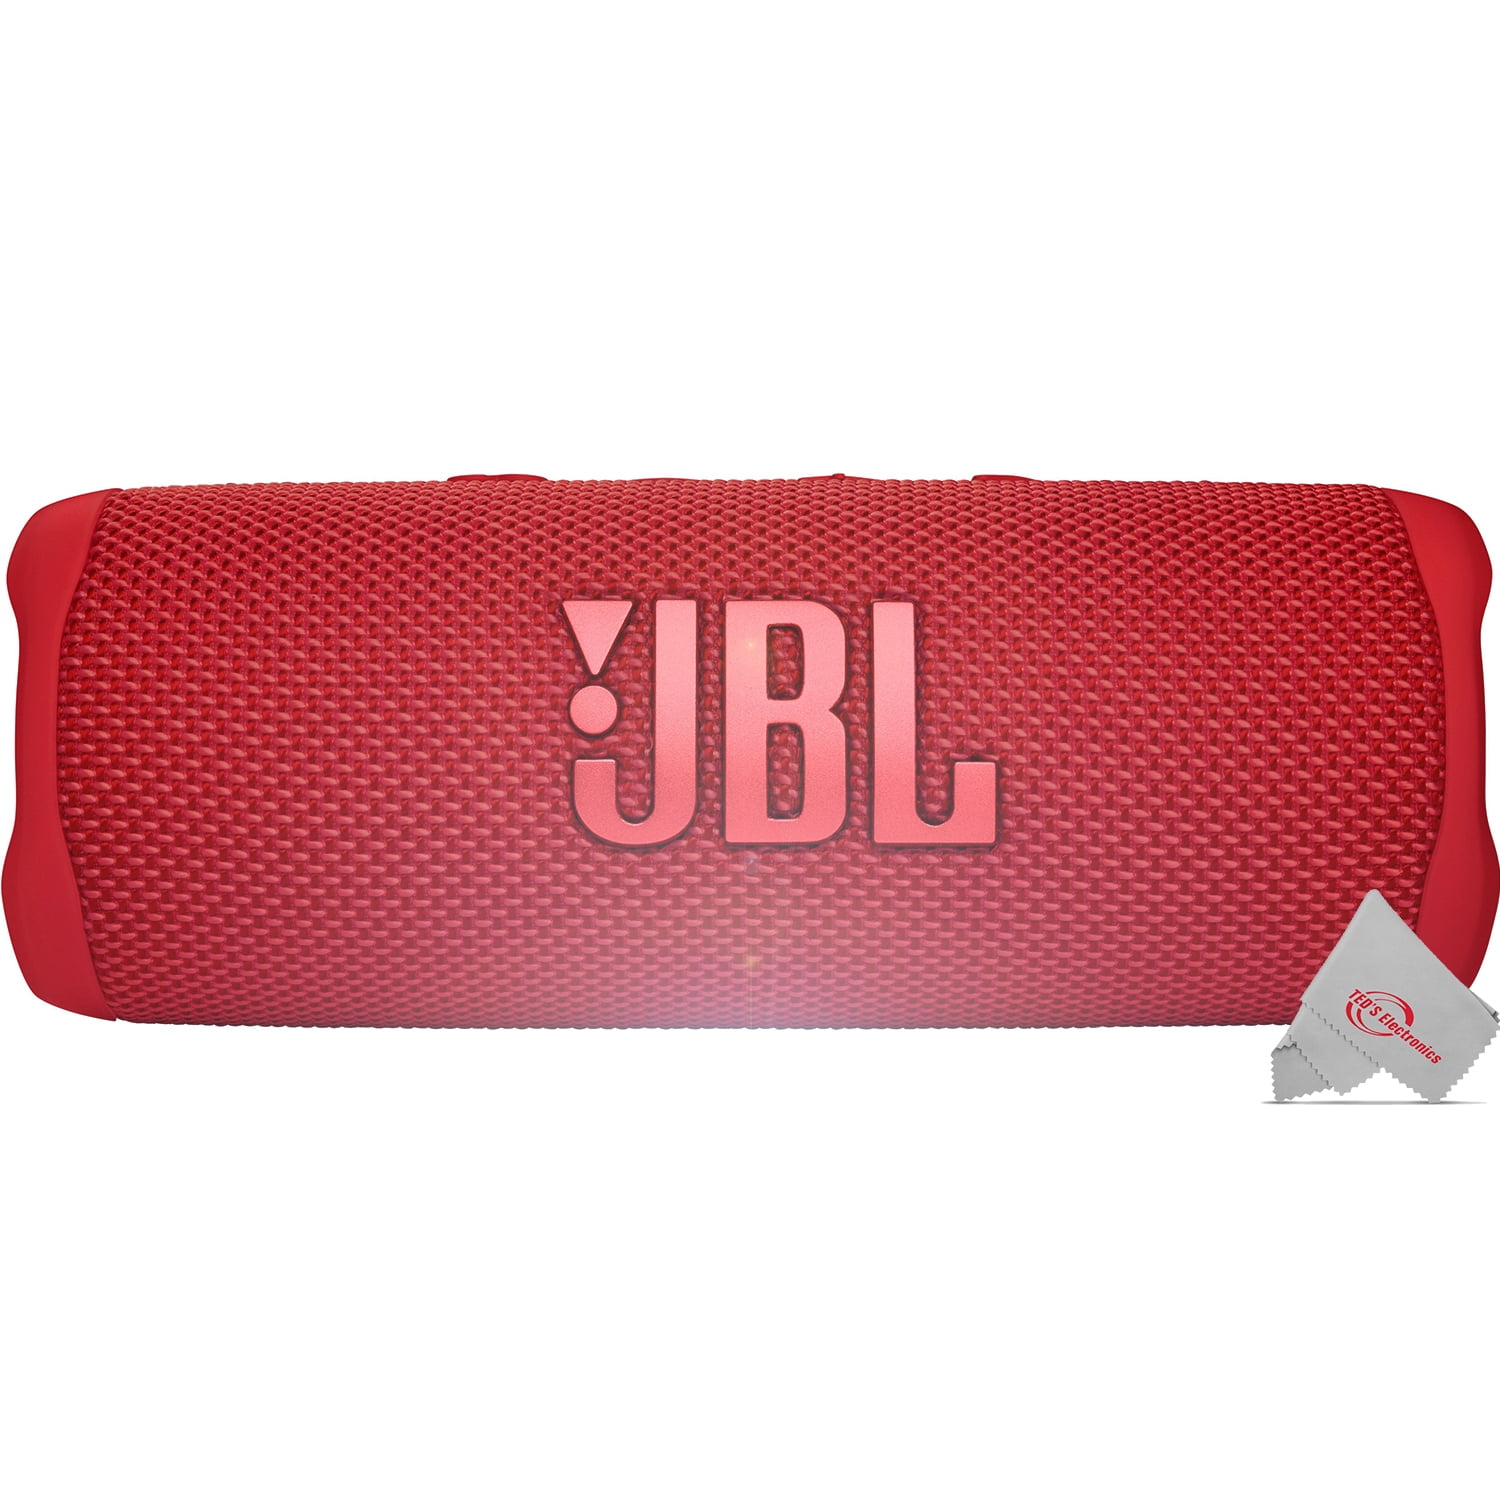 2x JBL FLIP 6 Wireless Portable Waterproof Speaker - Red - Walmart.com